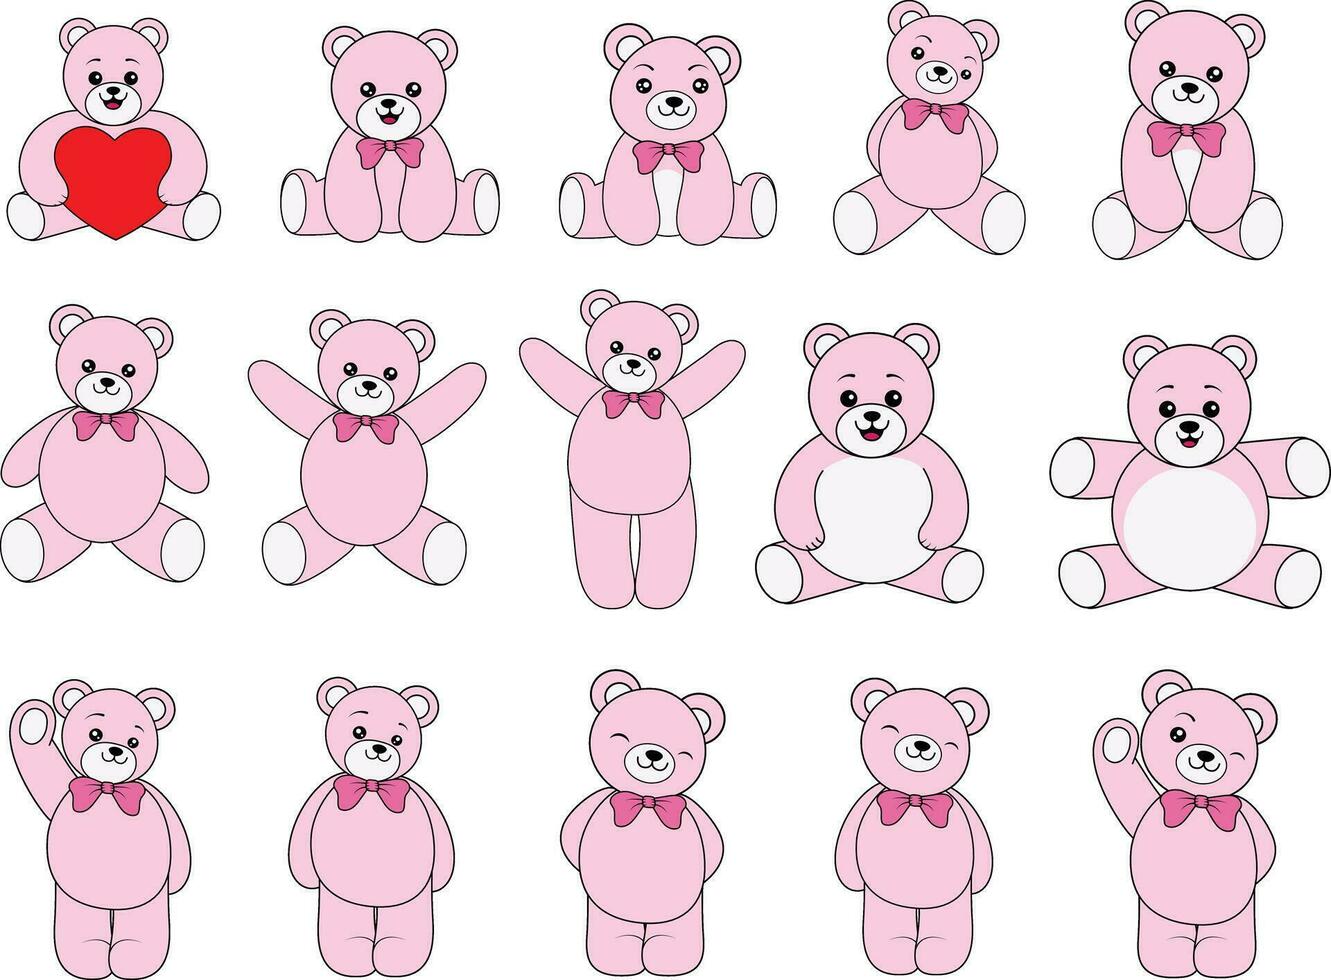 reeks van 15 teddy beren, verzameling van 15 aanbiddelijk bears vector